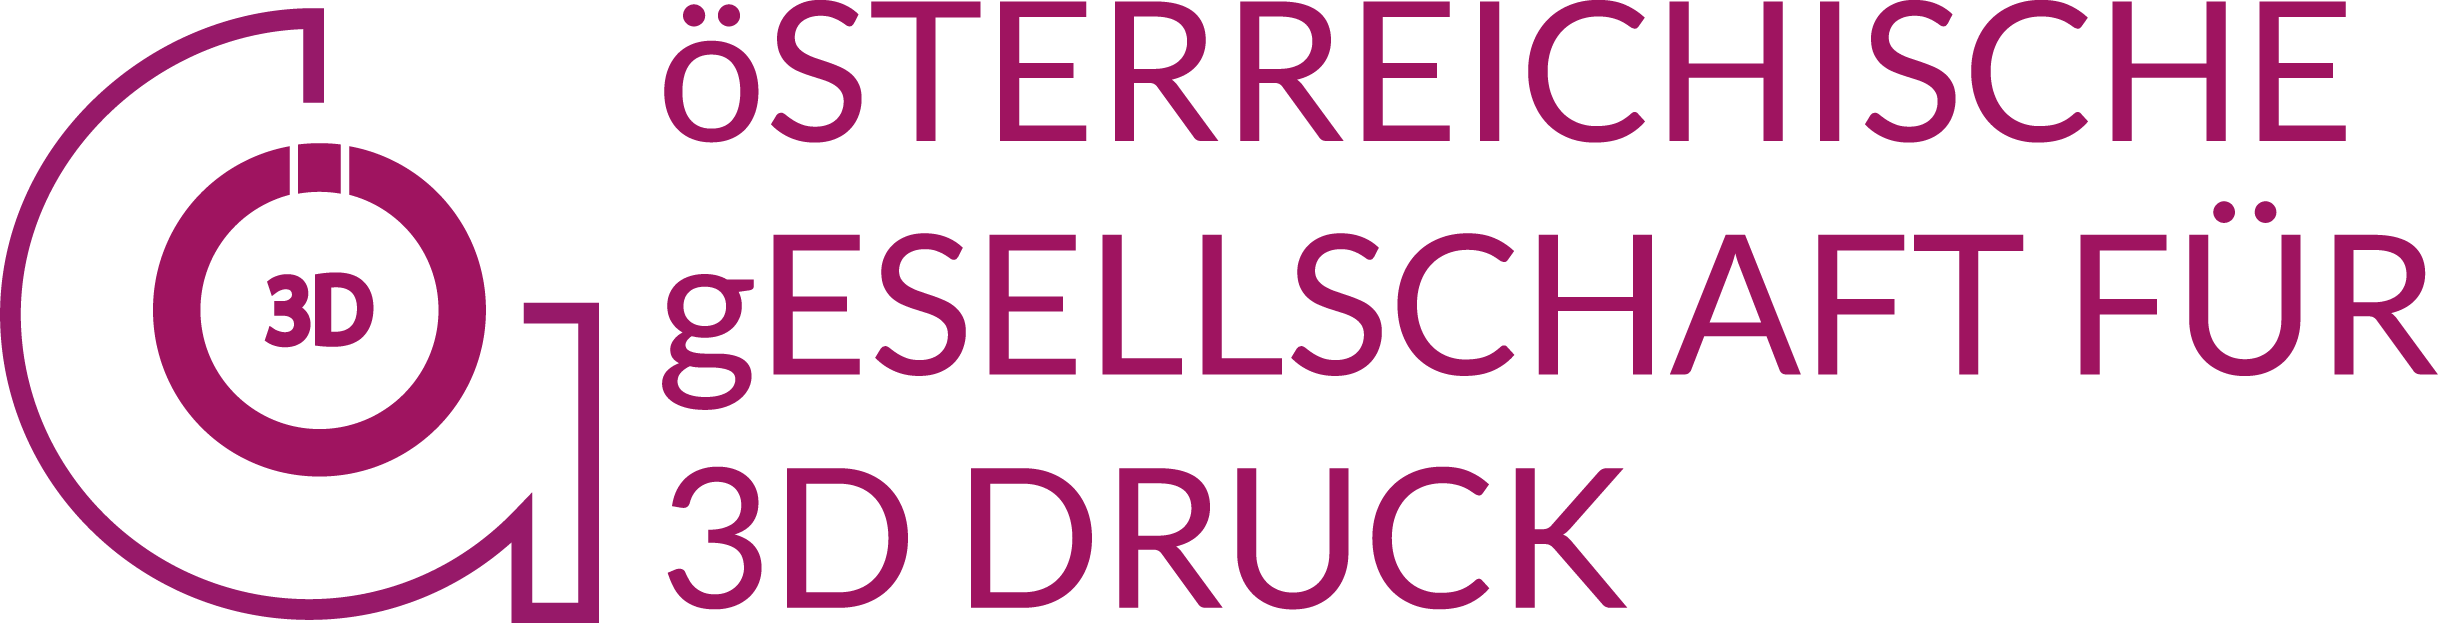 Copy of Österreichische Gesellschaft für 3D-Druck